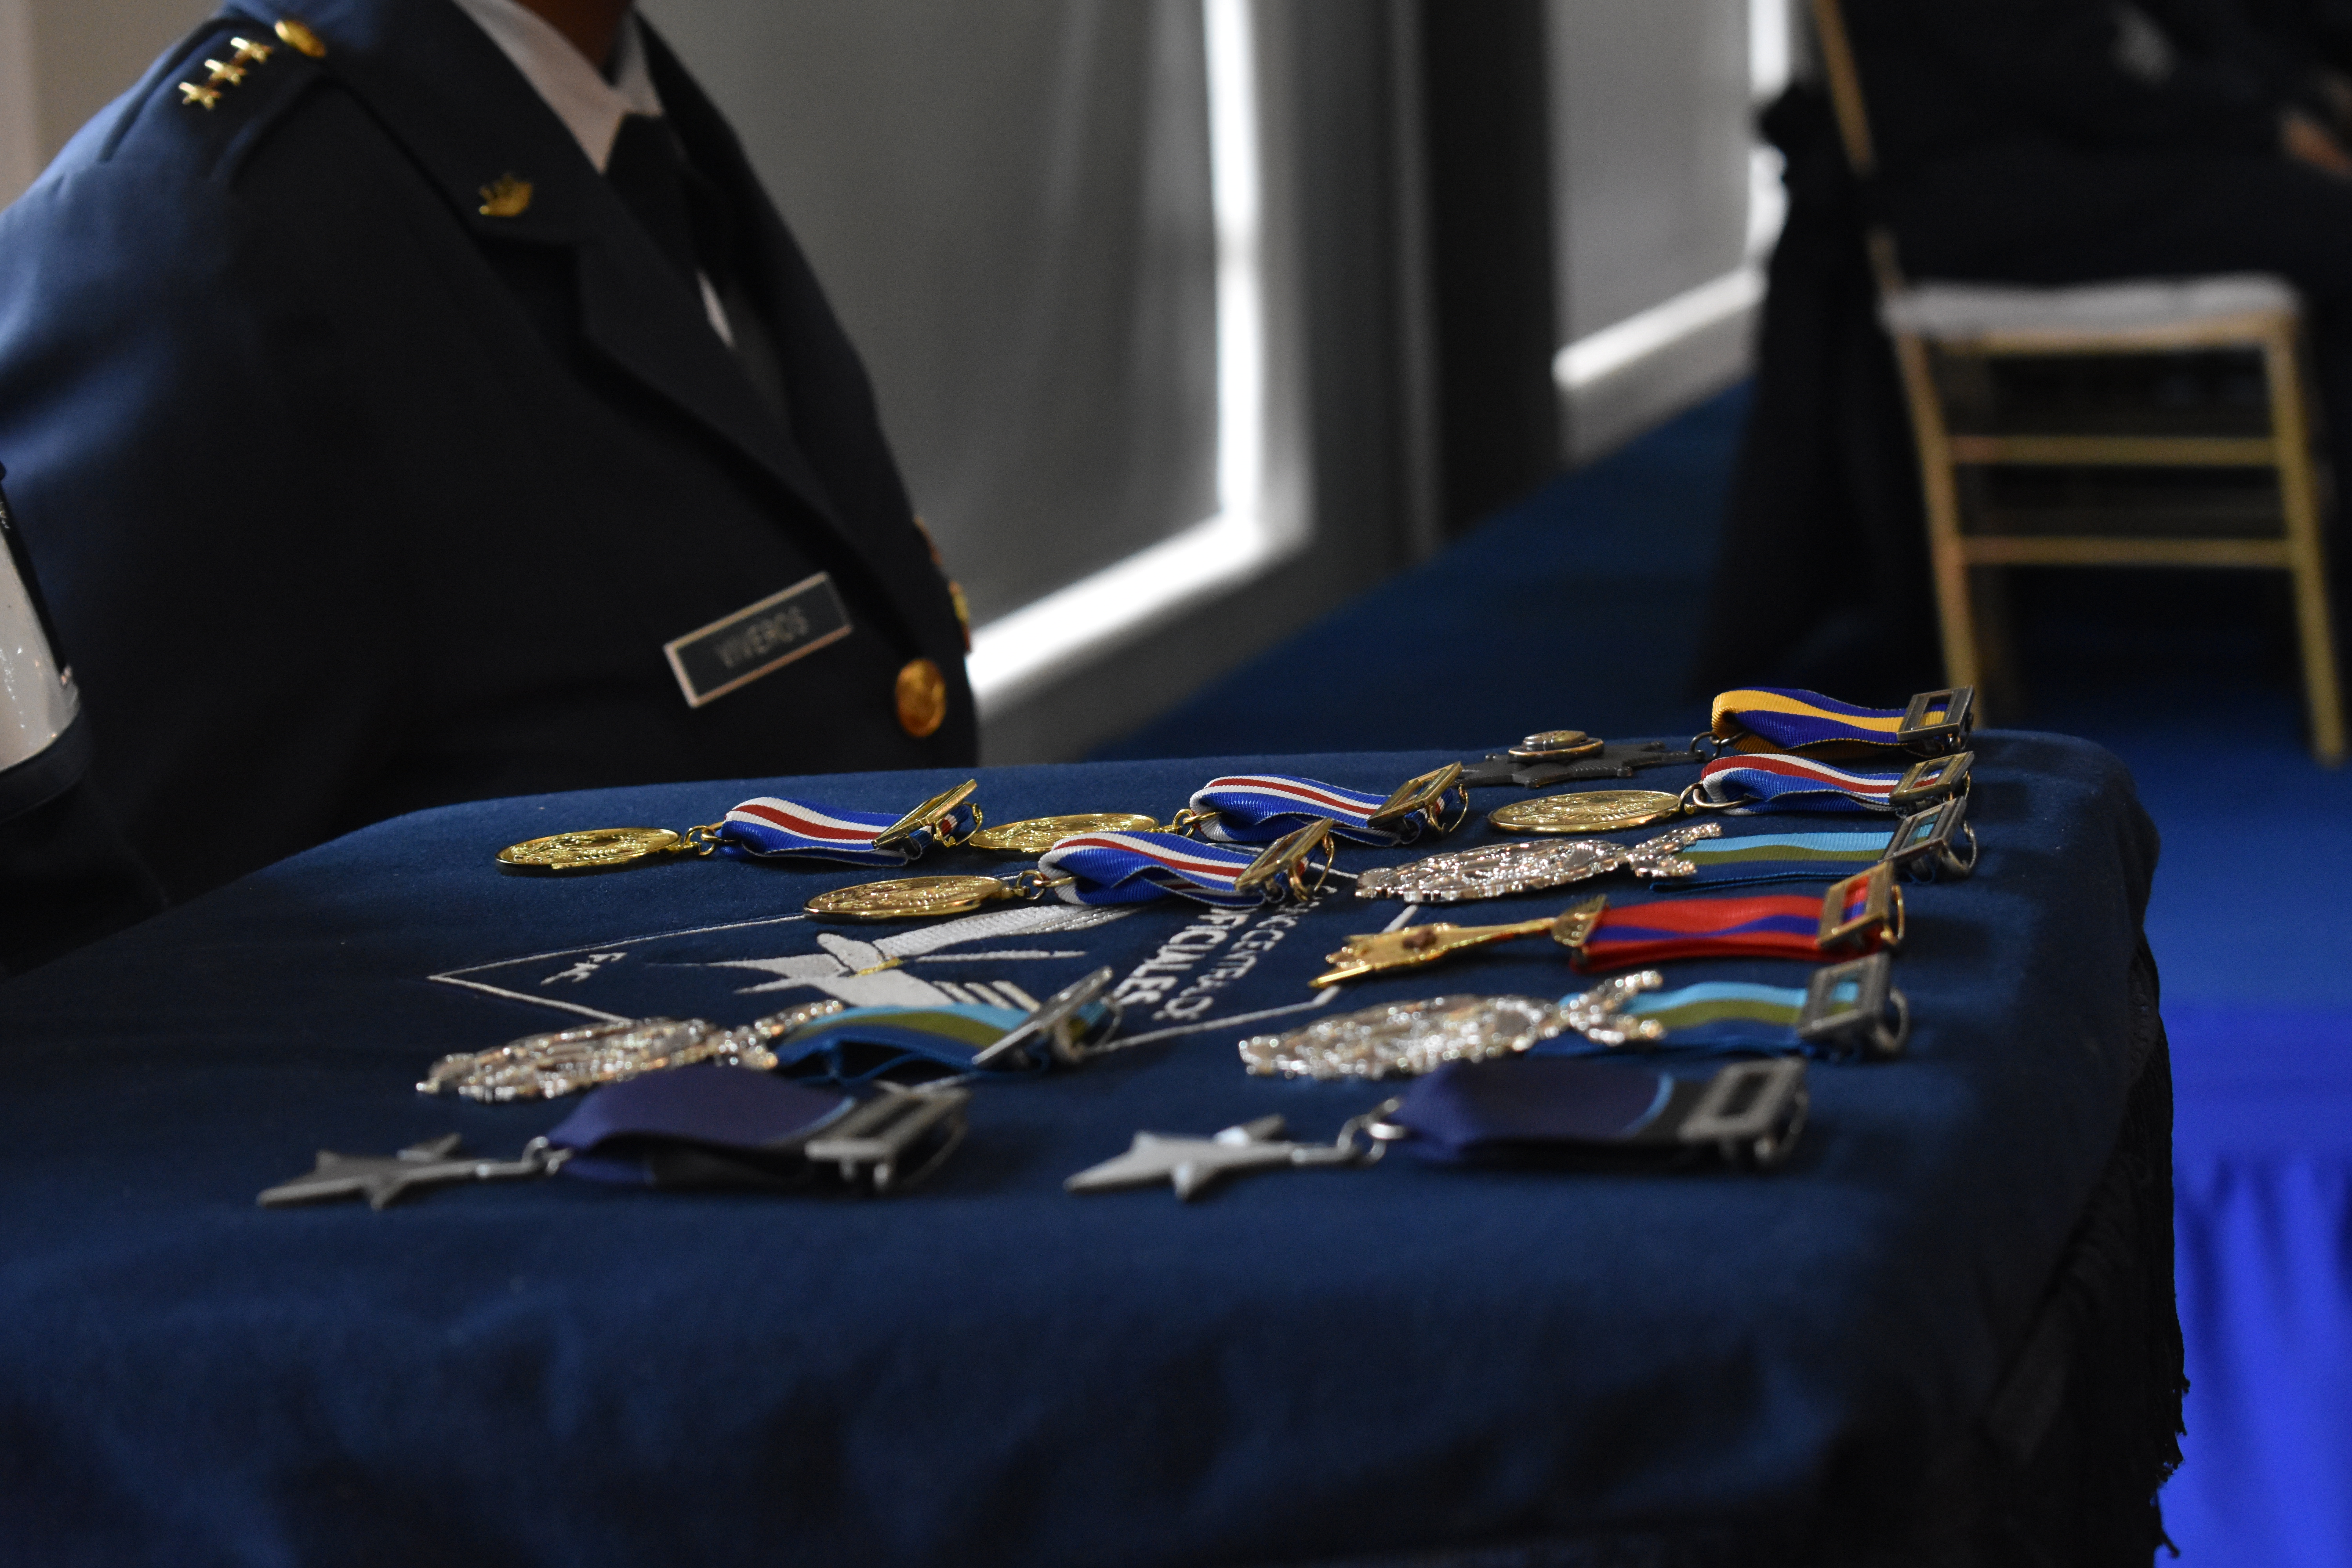 Con ceremonia militar, la EPFAC conmemoró 64 años de servicio